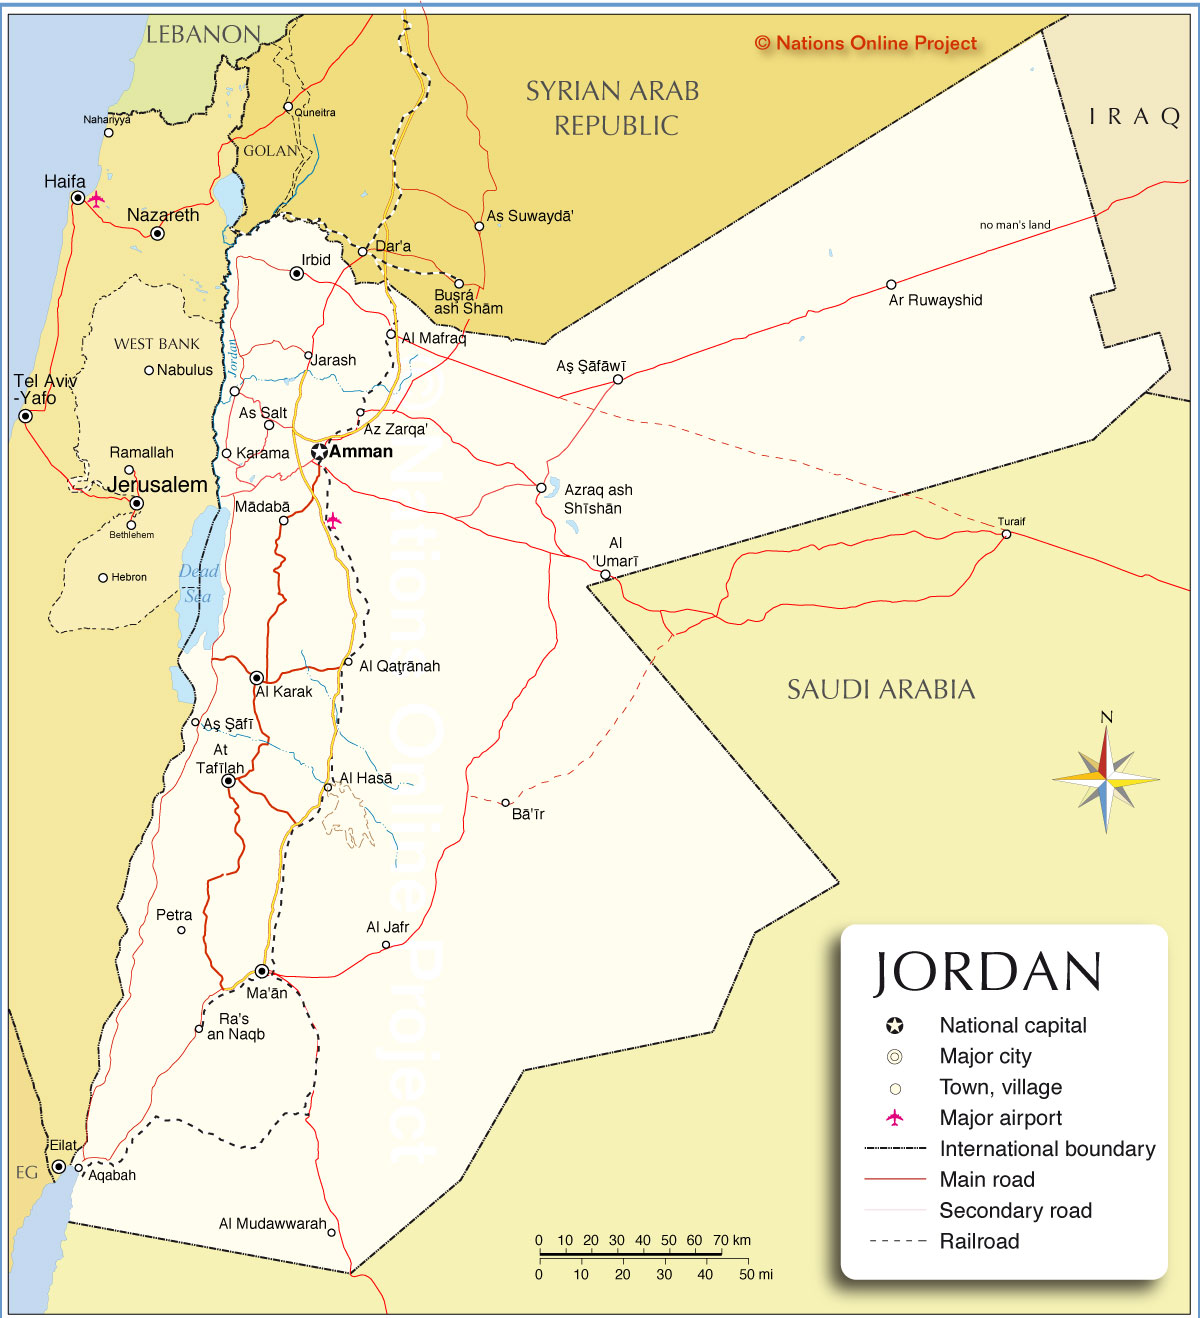 jordan national language